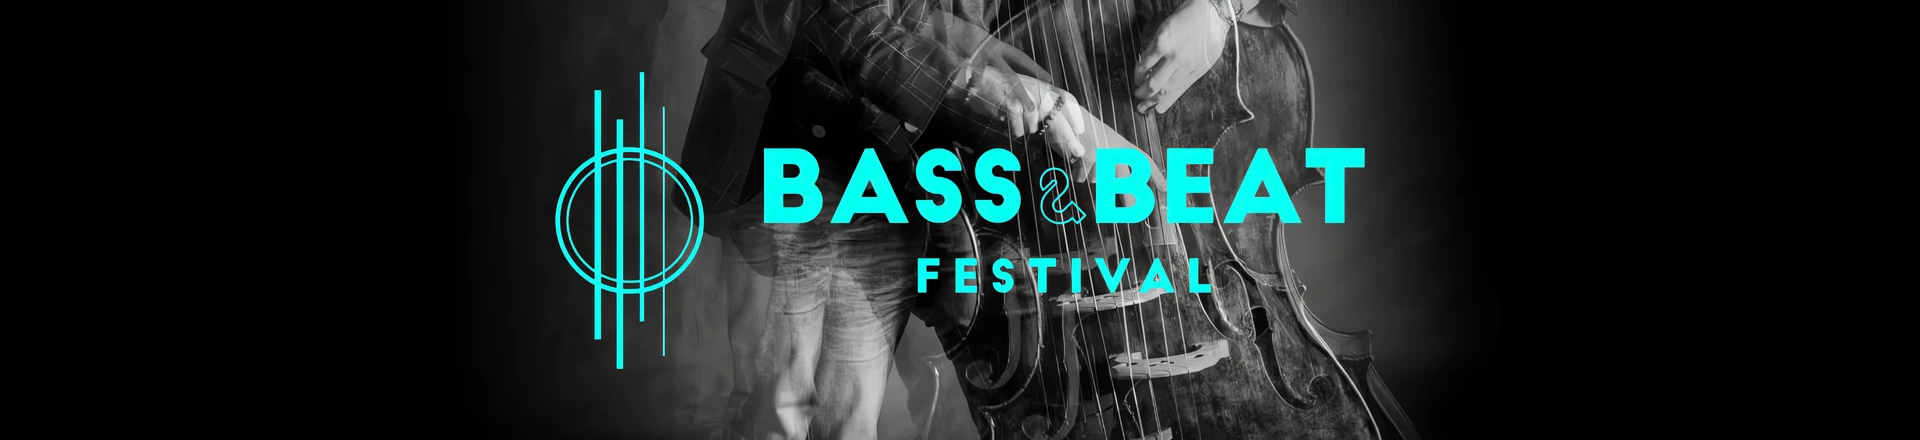 BASS&BEAT: Prezentacja instrumentów perkusyjnych z różnych kultur